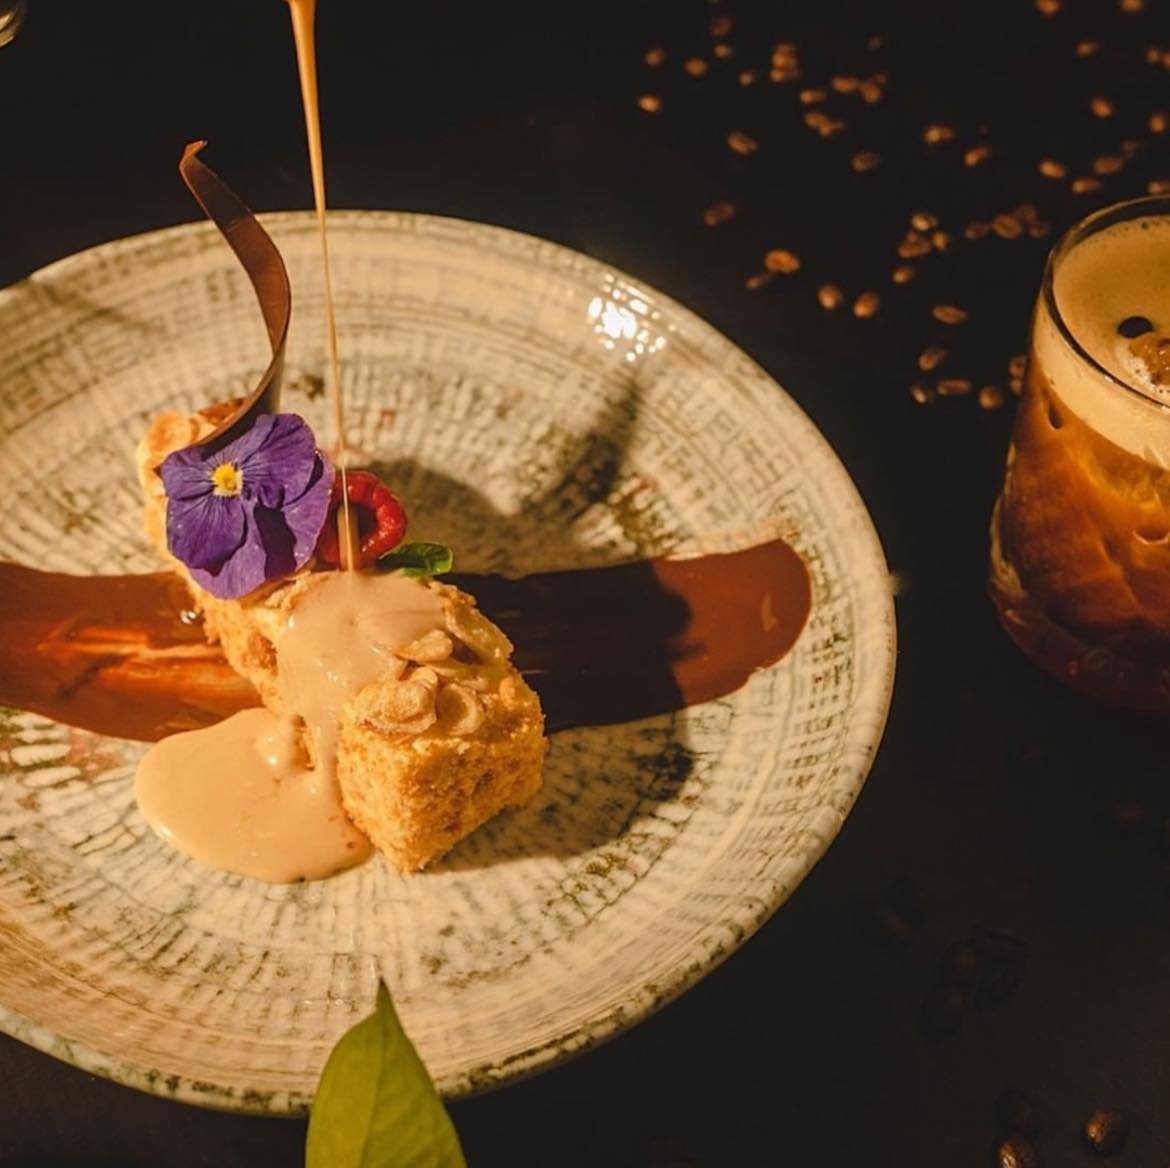 Best Romantic Restaurants in Tulum, Mexico